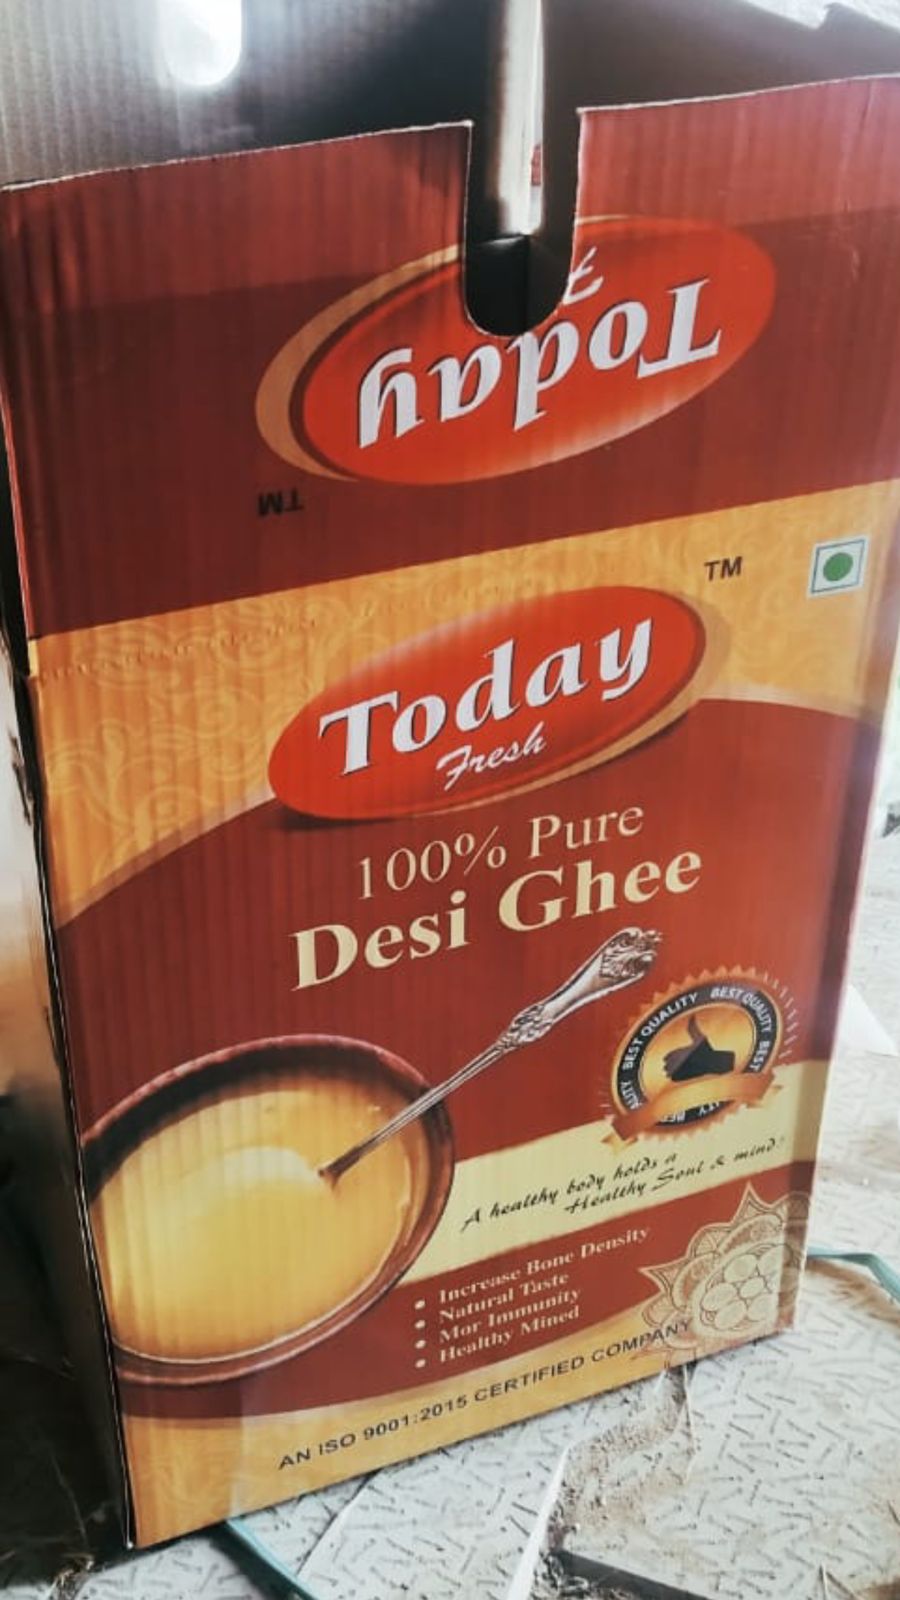 100% Pure Desi Ghee 100% Pure